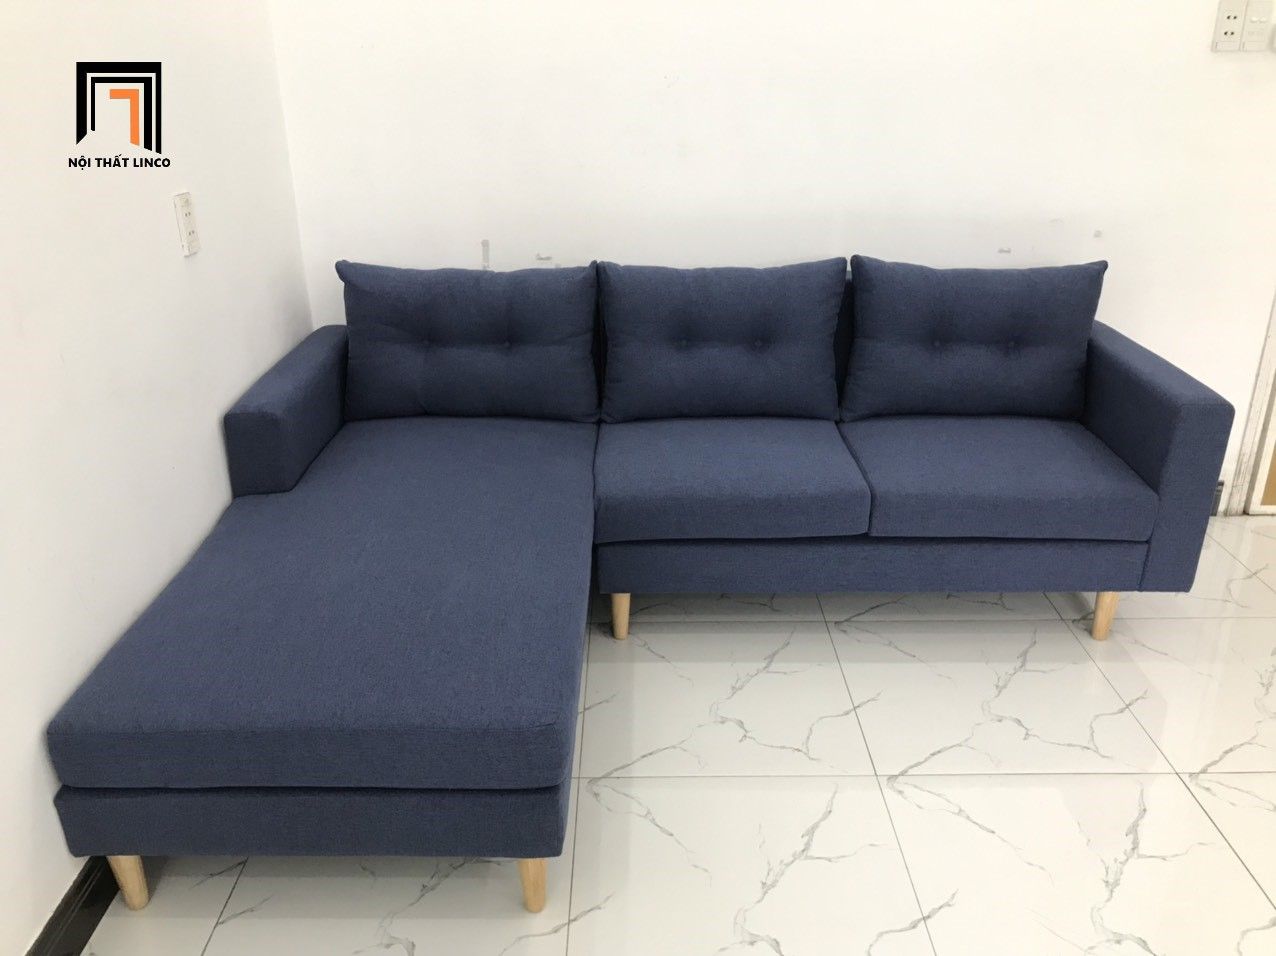  Bộ ghế sofa góc 2m2 x 1m6 màu xanh đen giá rẻ 